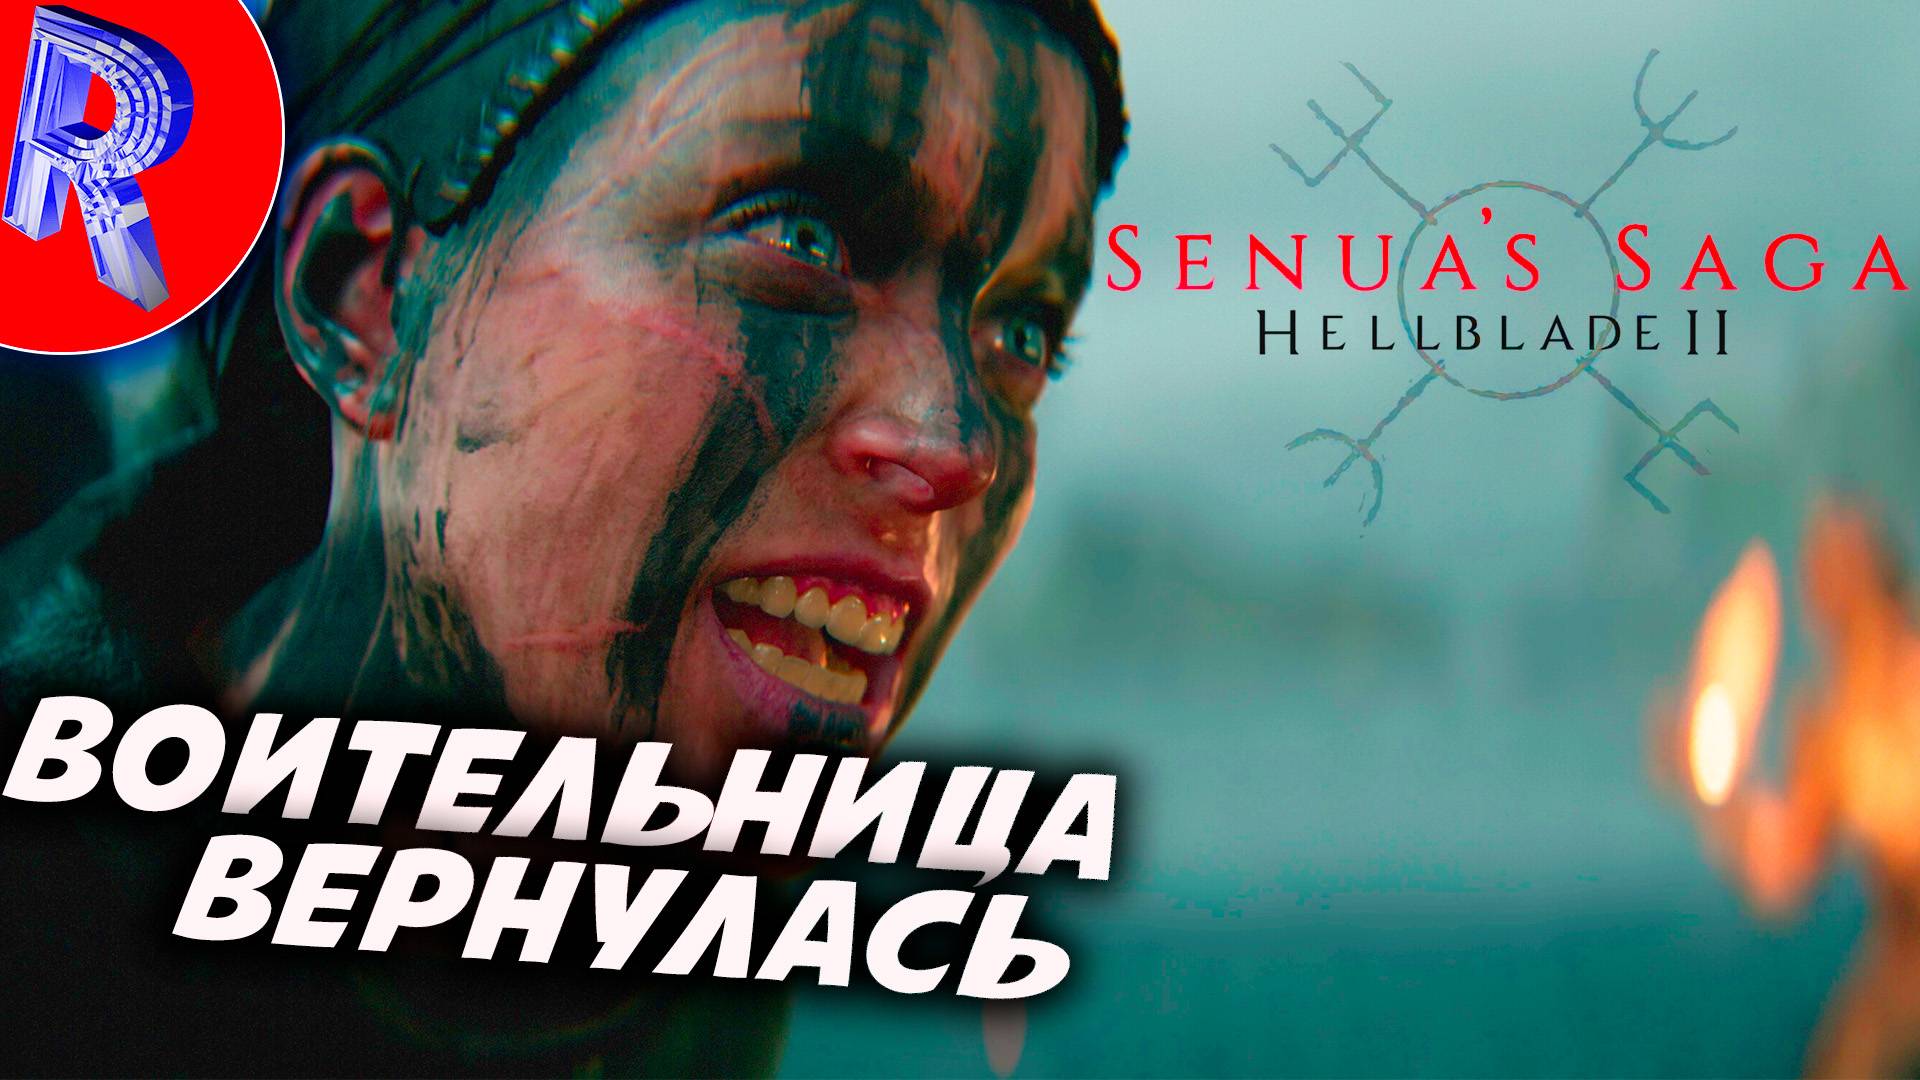 🎮СКАНДИНАВСКАЯ ВОИТЕЛЬНИЦА ВЕРНУЛАСЬ ▶ Senua’s Saga: Hellblade II  - Сага Сенуа: Адский клинок 2